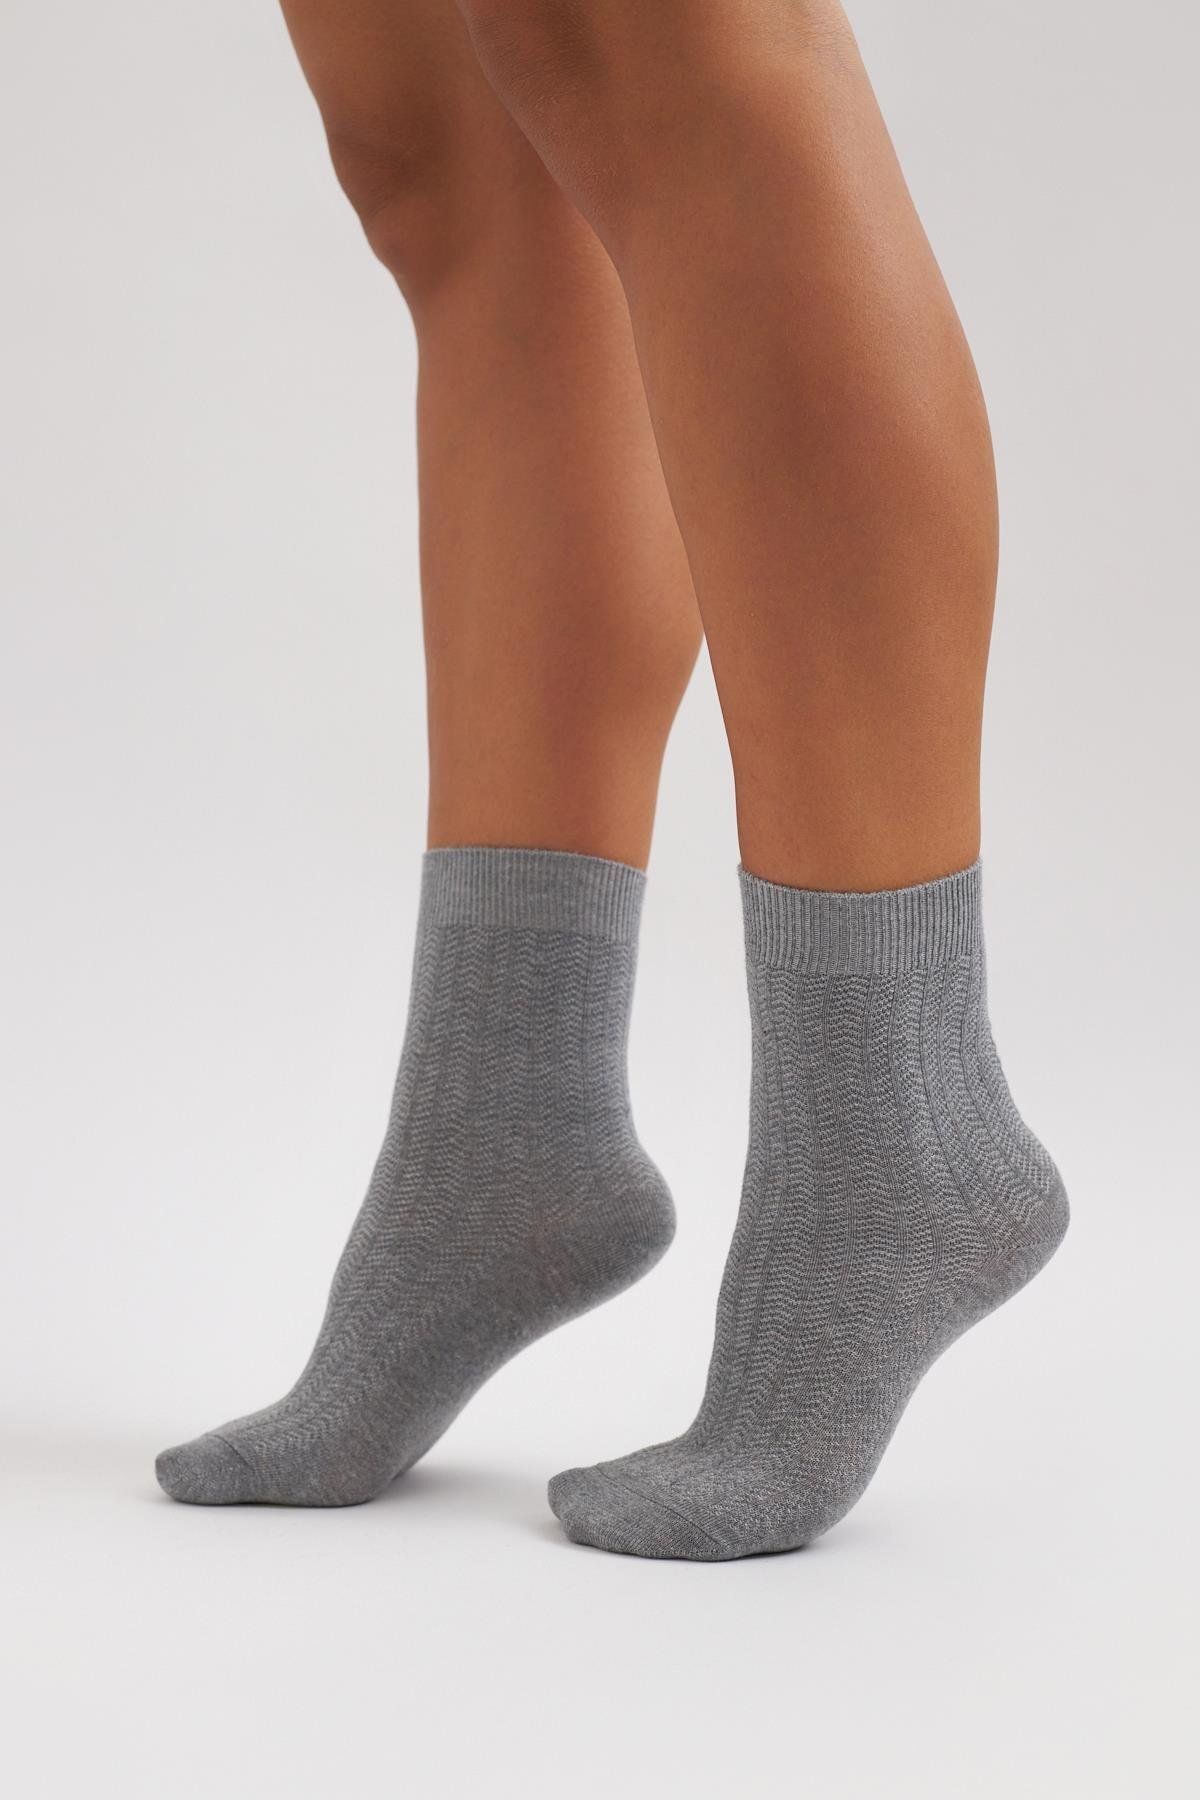 Katia & Bony Kadın Desenli Soket Çorap Gri